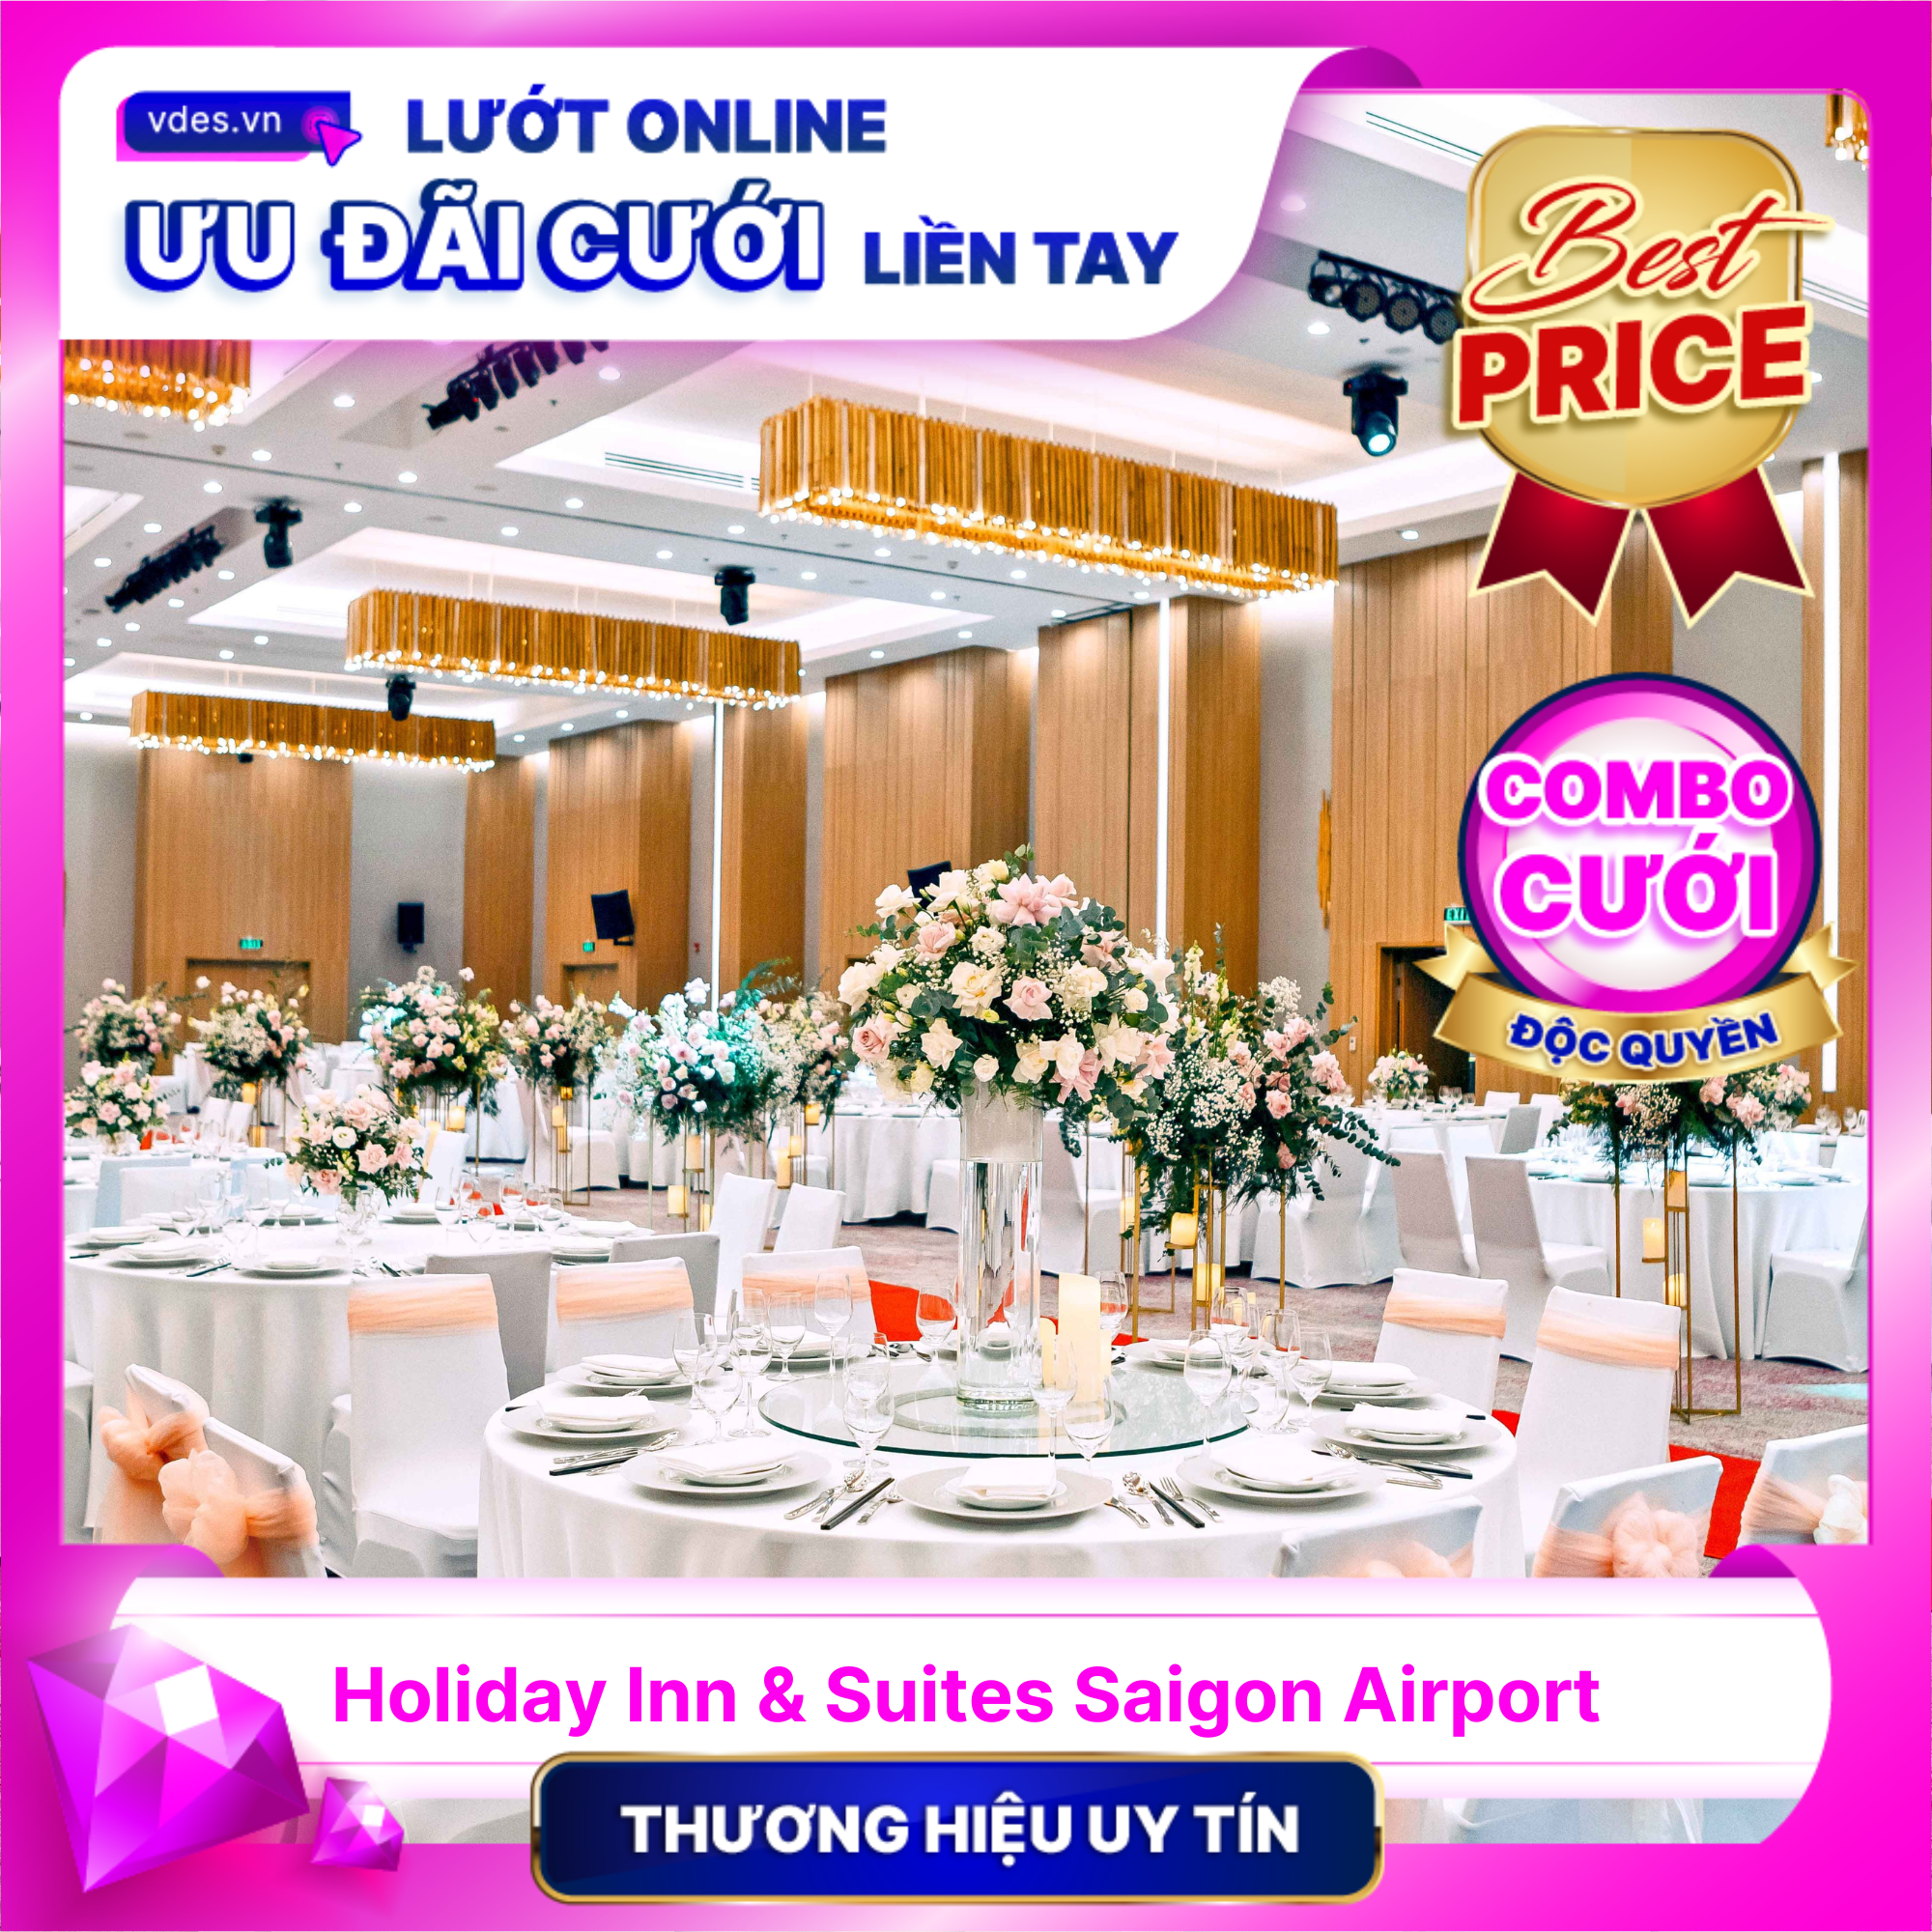 Holiday Inn & Suites Saigon Airport - Không gian sảnh tiệc sang trọng chuẩn 5 sao quốc tế